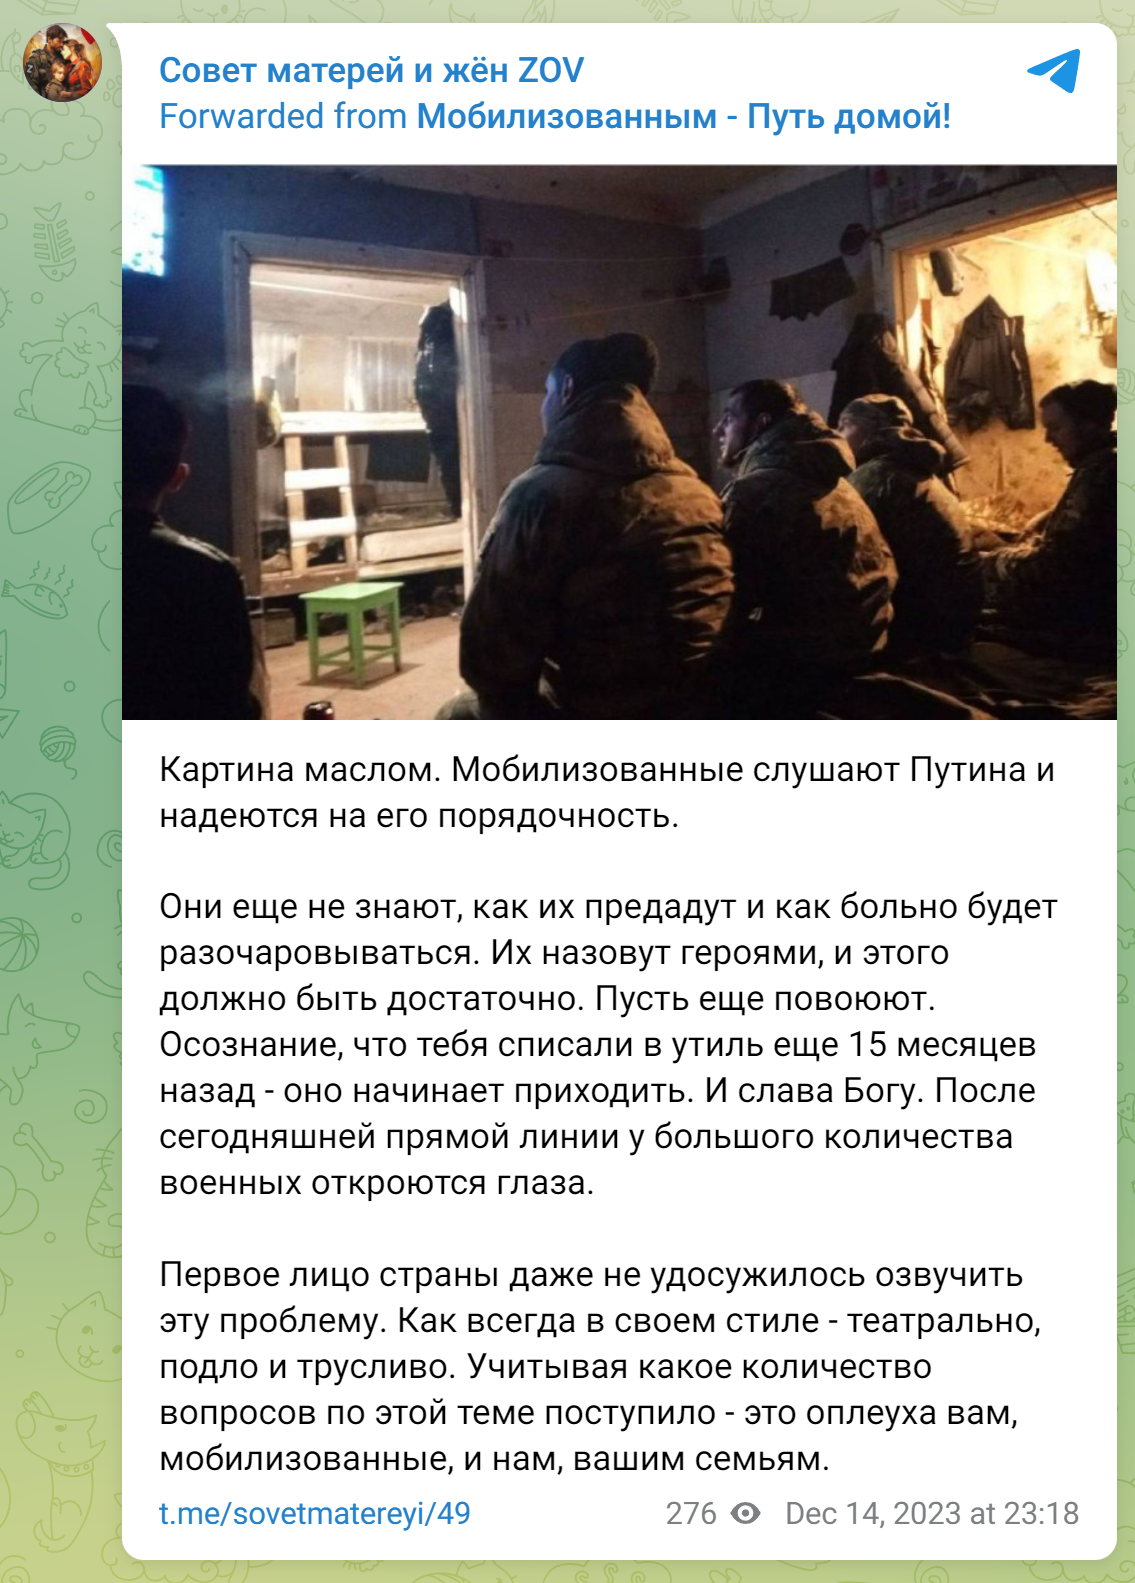 Определить, как авторы канала относятся к Путину, затруднительно
Телеграм-канал «Совет матерей и жён ZOV»